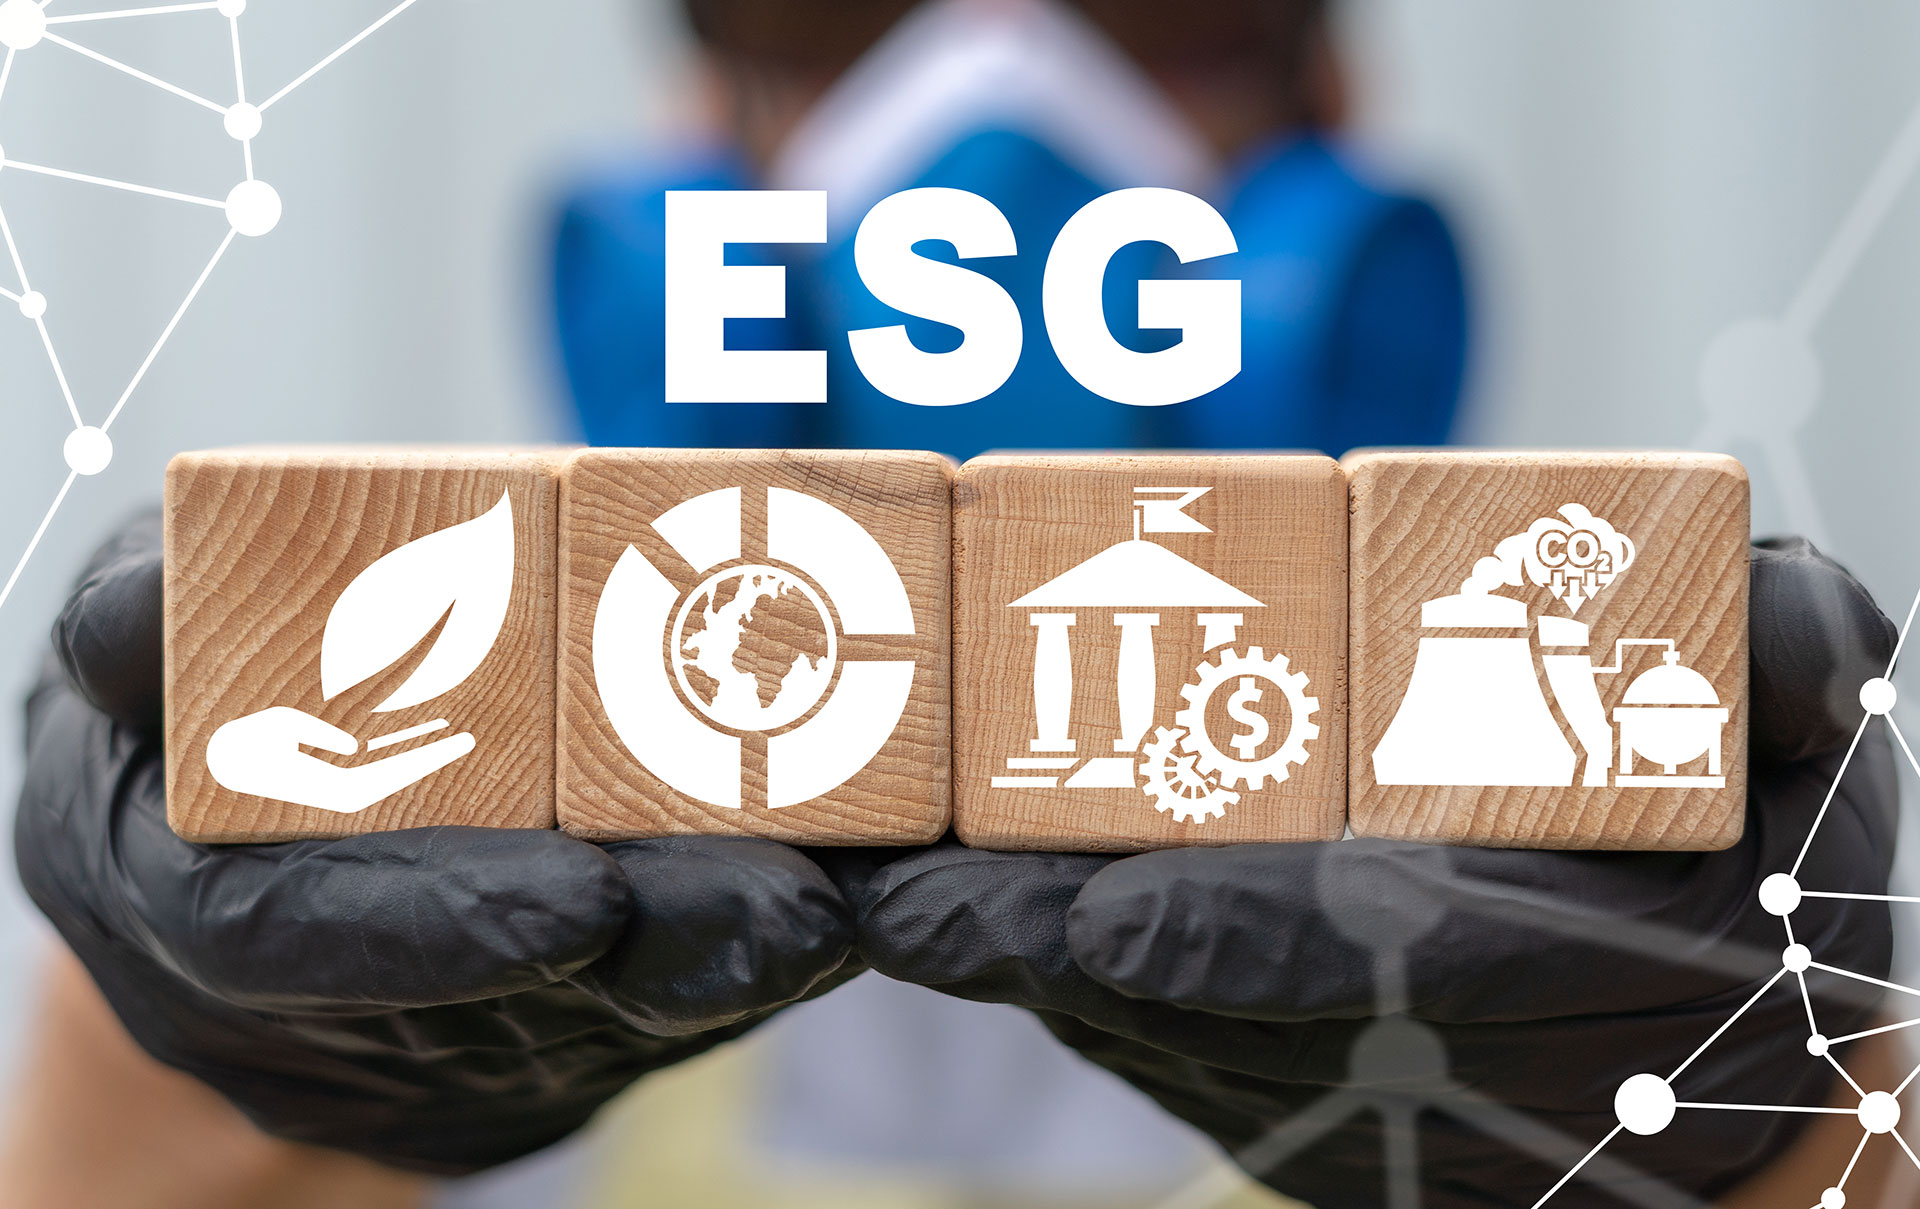 Các công nghệ thường được sử dụng trong văn phòng xanh theo tiêu chí "E" trong ESG